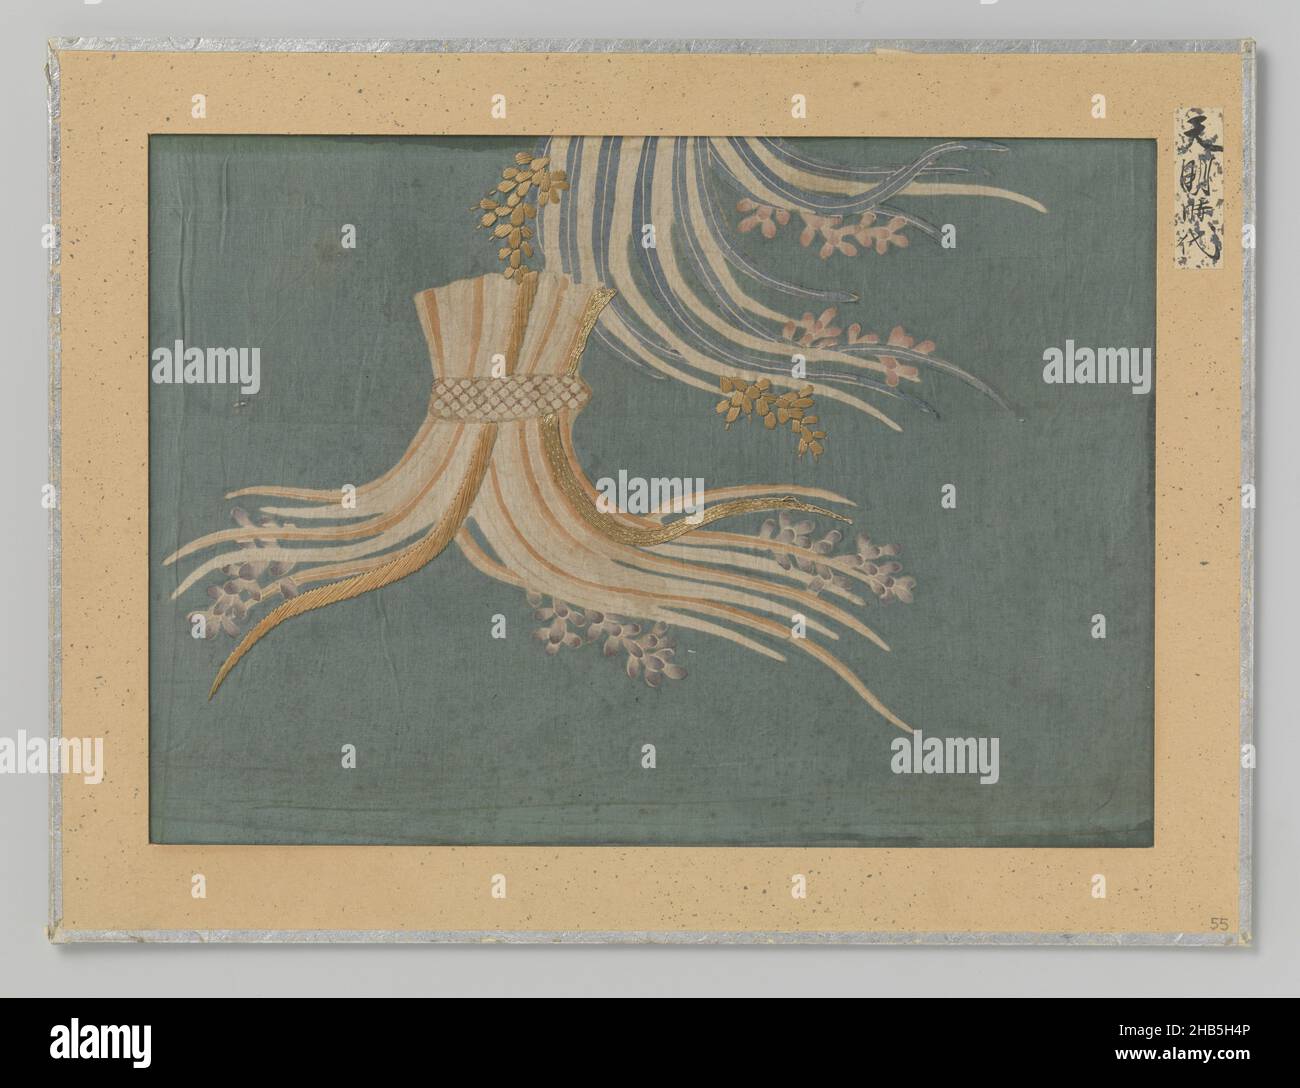 Textilfragment, Textilfragment, Druck und Stickerei, zwei Heubündel auf meergrünen Hintergrund., anonym, Japan, 1781 - 1789, Seide, Höhe 20 cm × Breite 28,5 cm Stockfoto